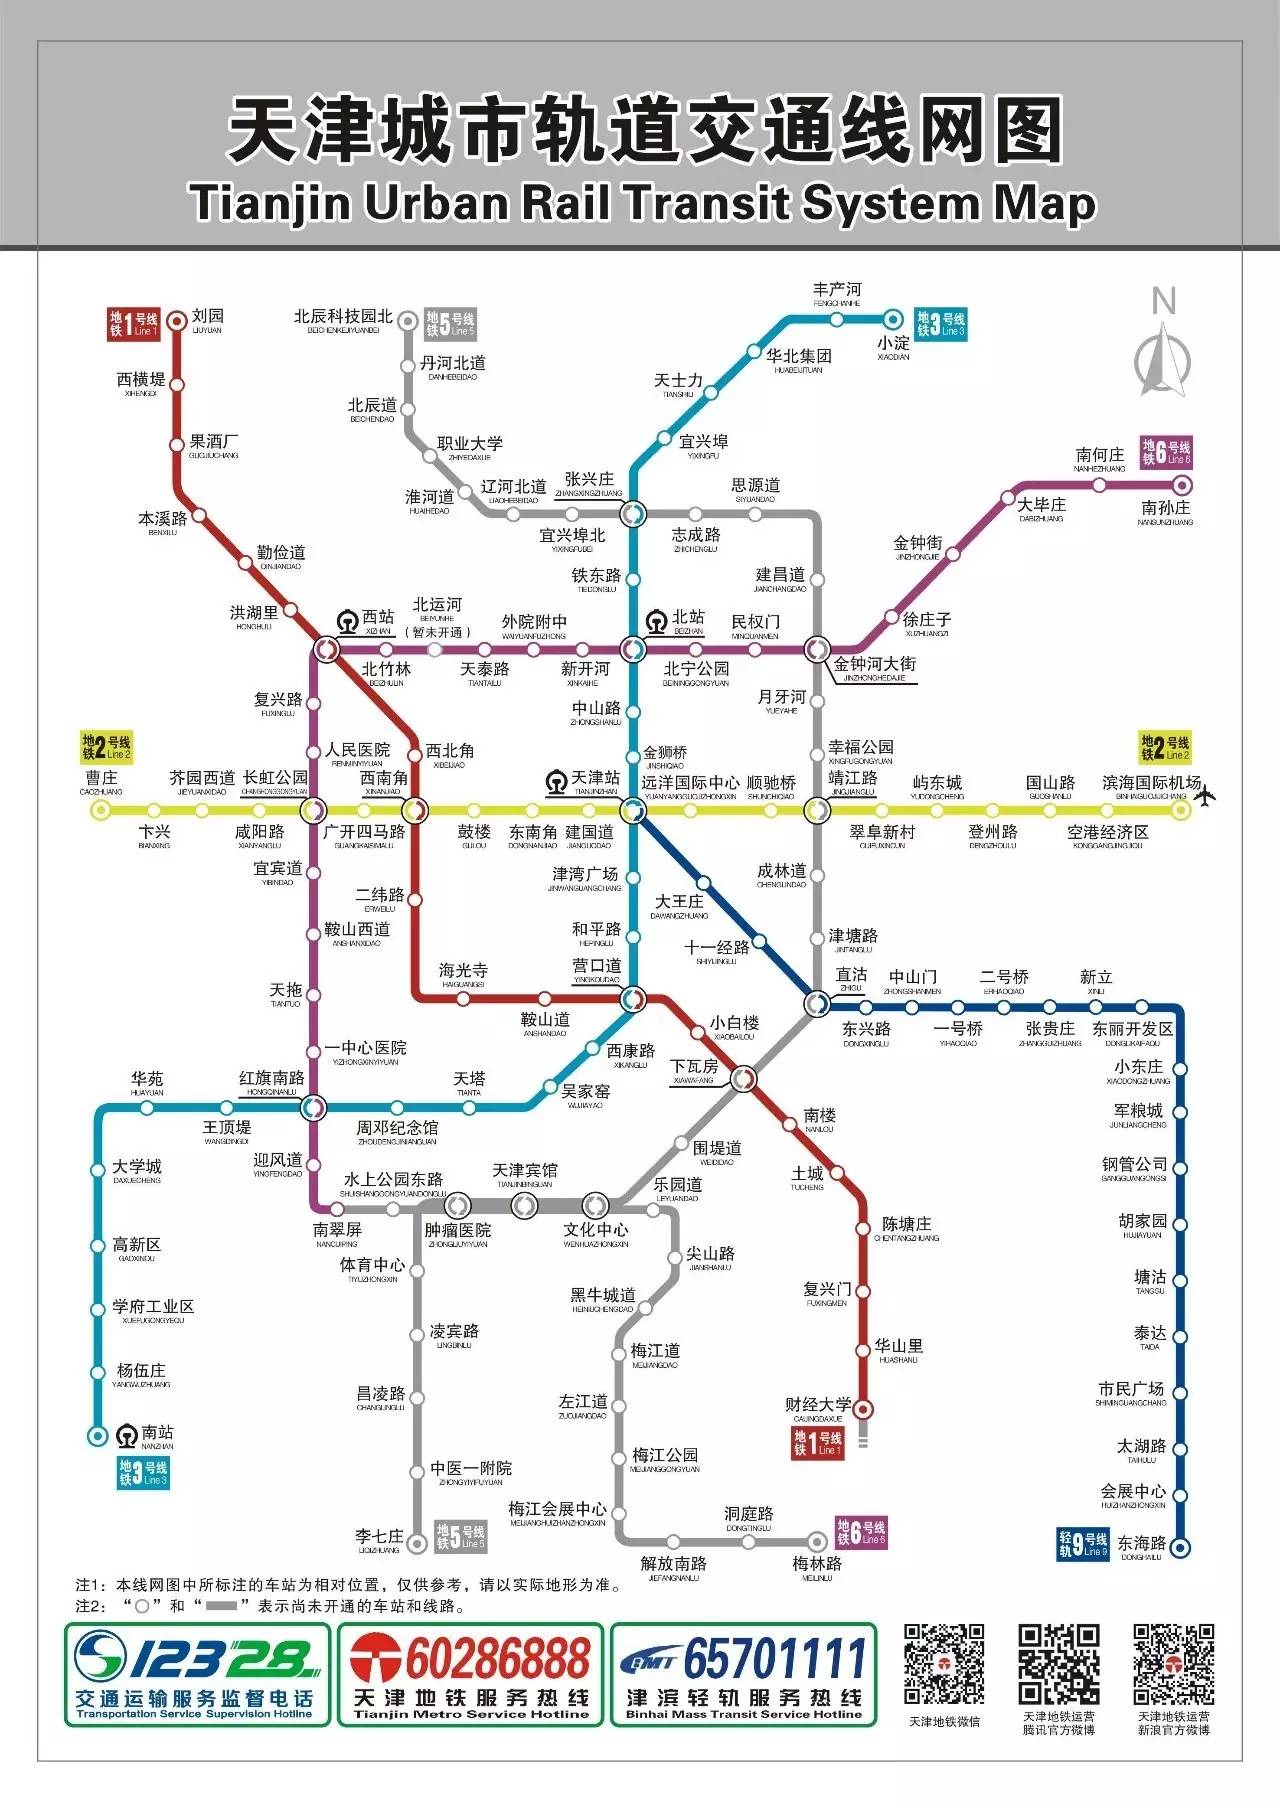 津滨轻轨9号线路线:天津站(换乘2,3号线) - 大王庄 - 路